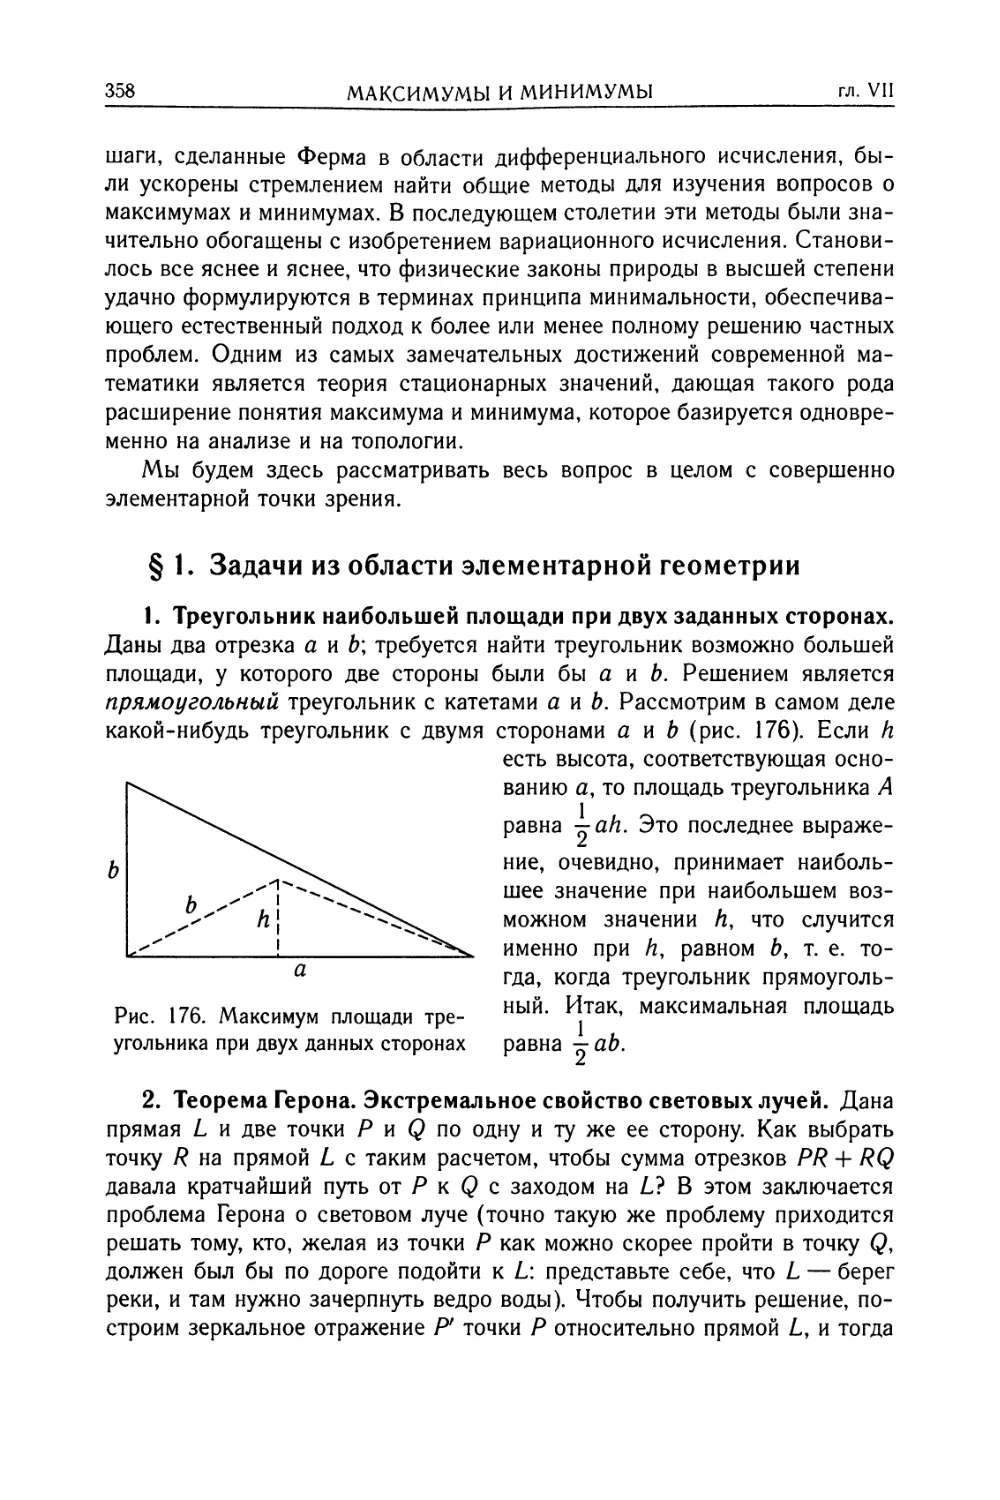 § 1. Задачи из области элементарной геометрии
2. Теорема Гepoнa. Экстремальное свойство световых лучей